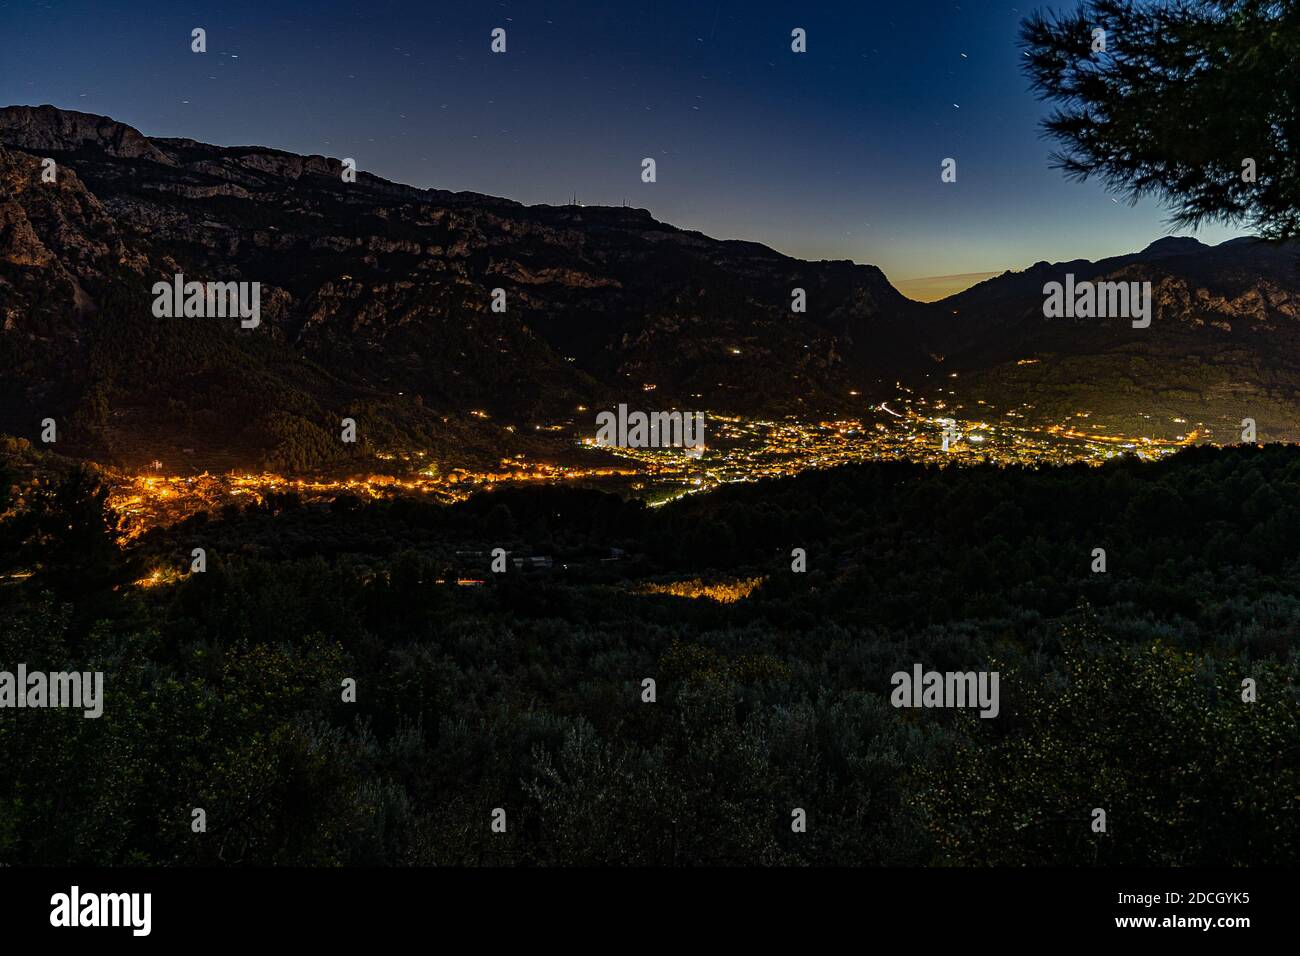 Spettacolare immagine della valle del Sóller con la città illuminata dalla strada Serra de Tramuntana, a Maiorca, Spagna. Foto Stock